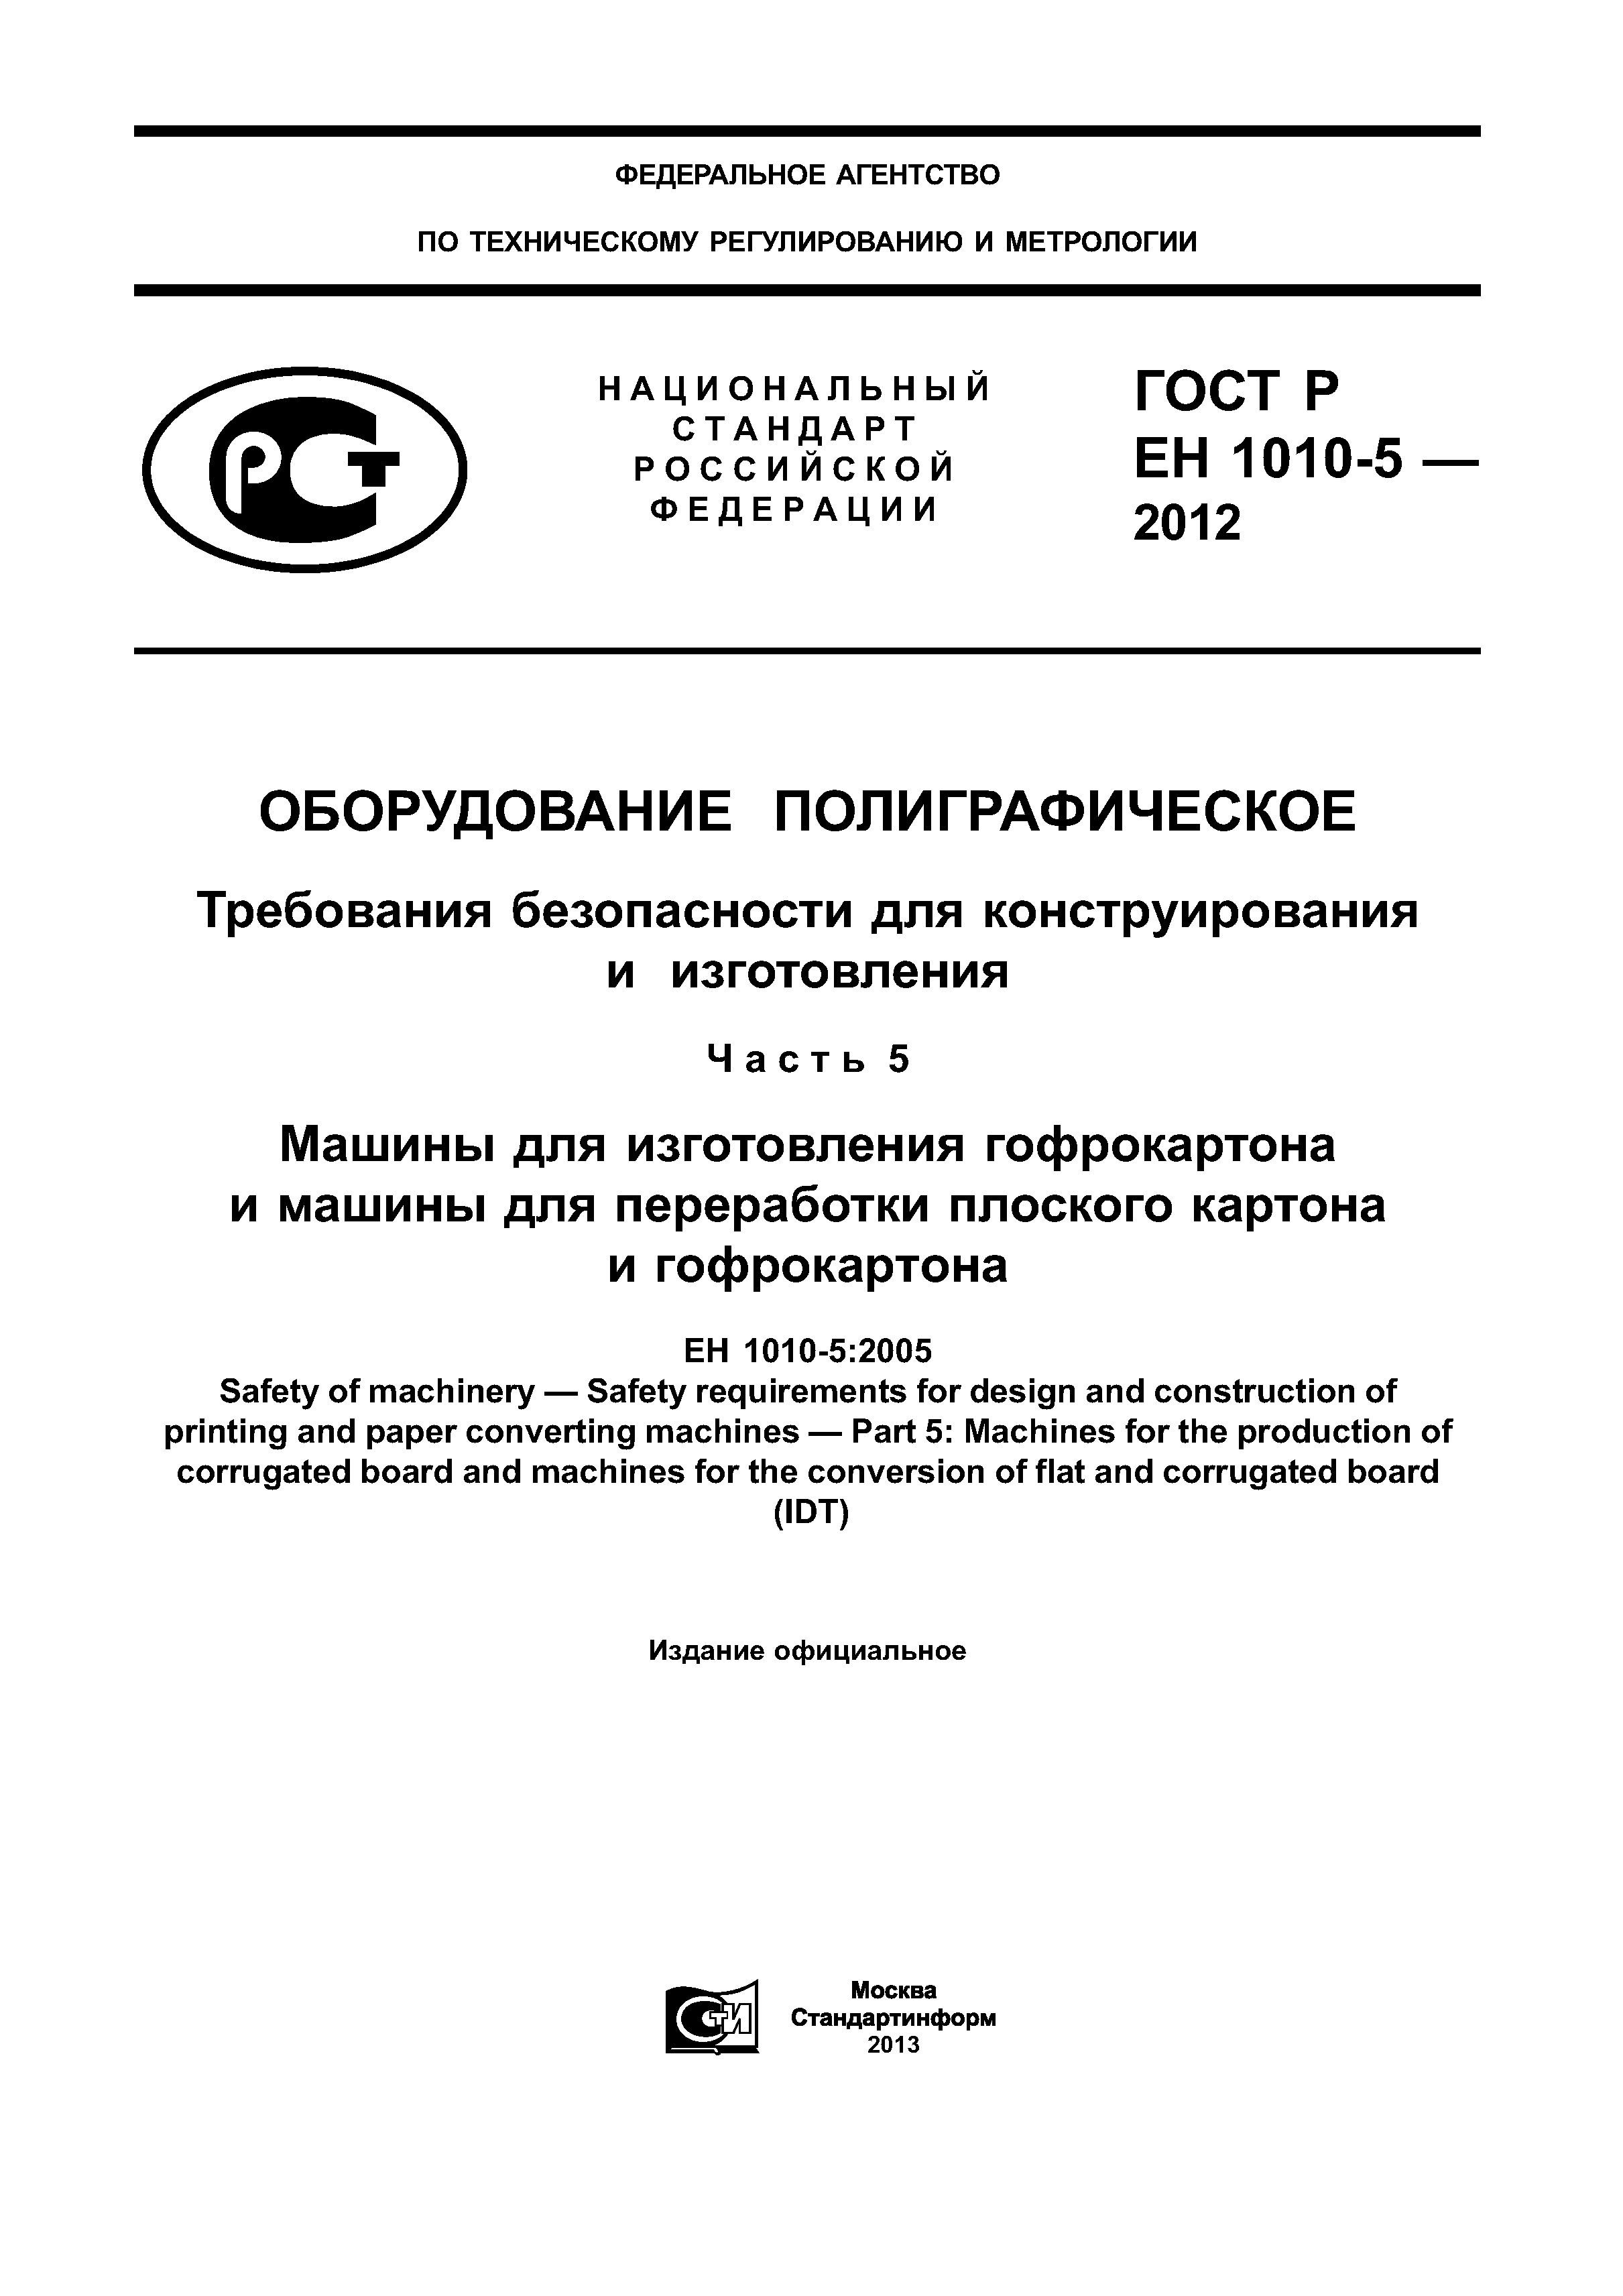 ГОСТ Р ЕН 1010-5-2012